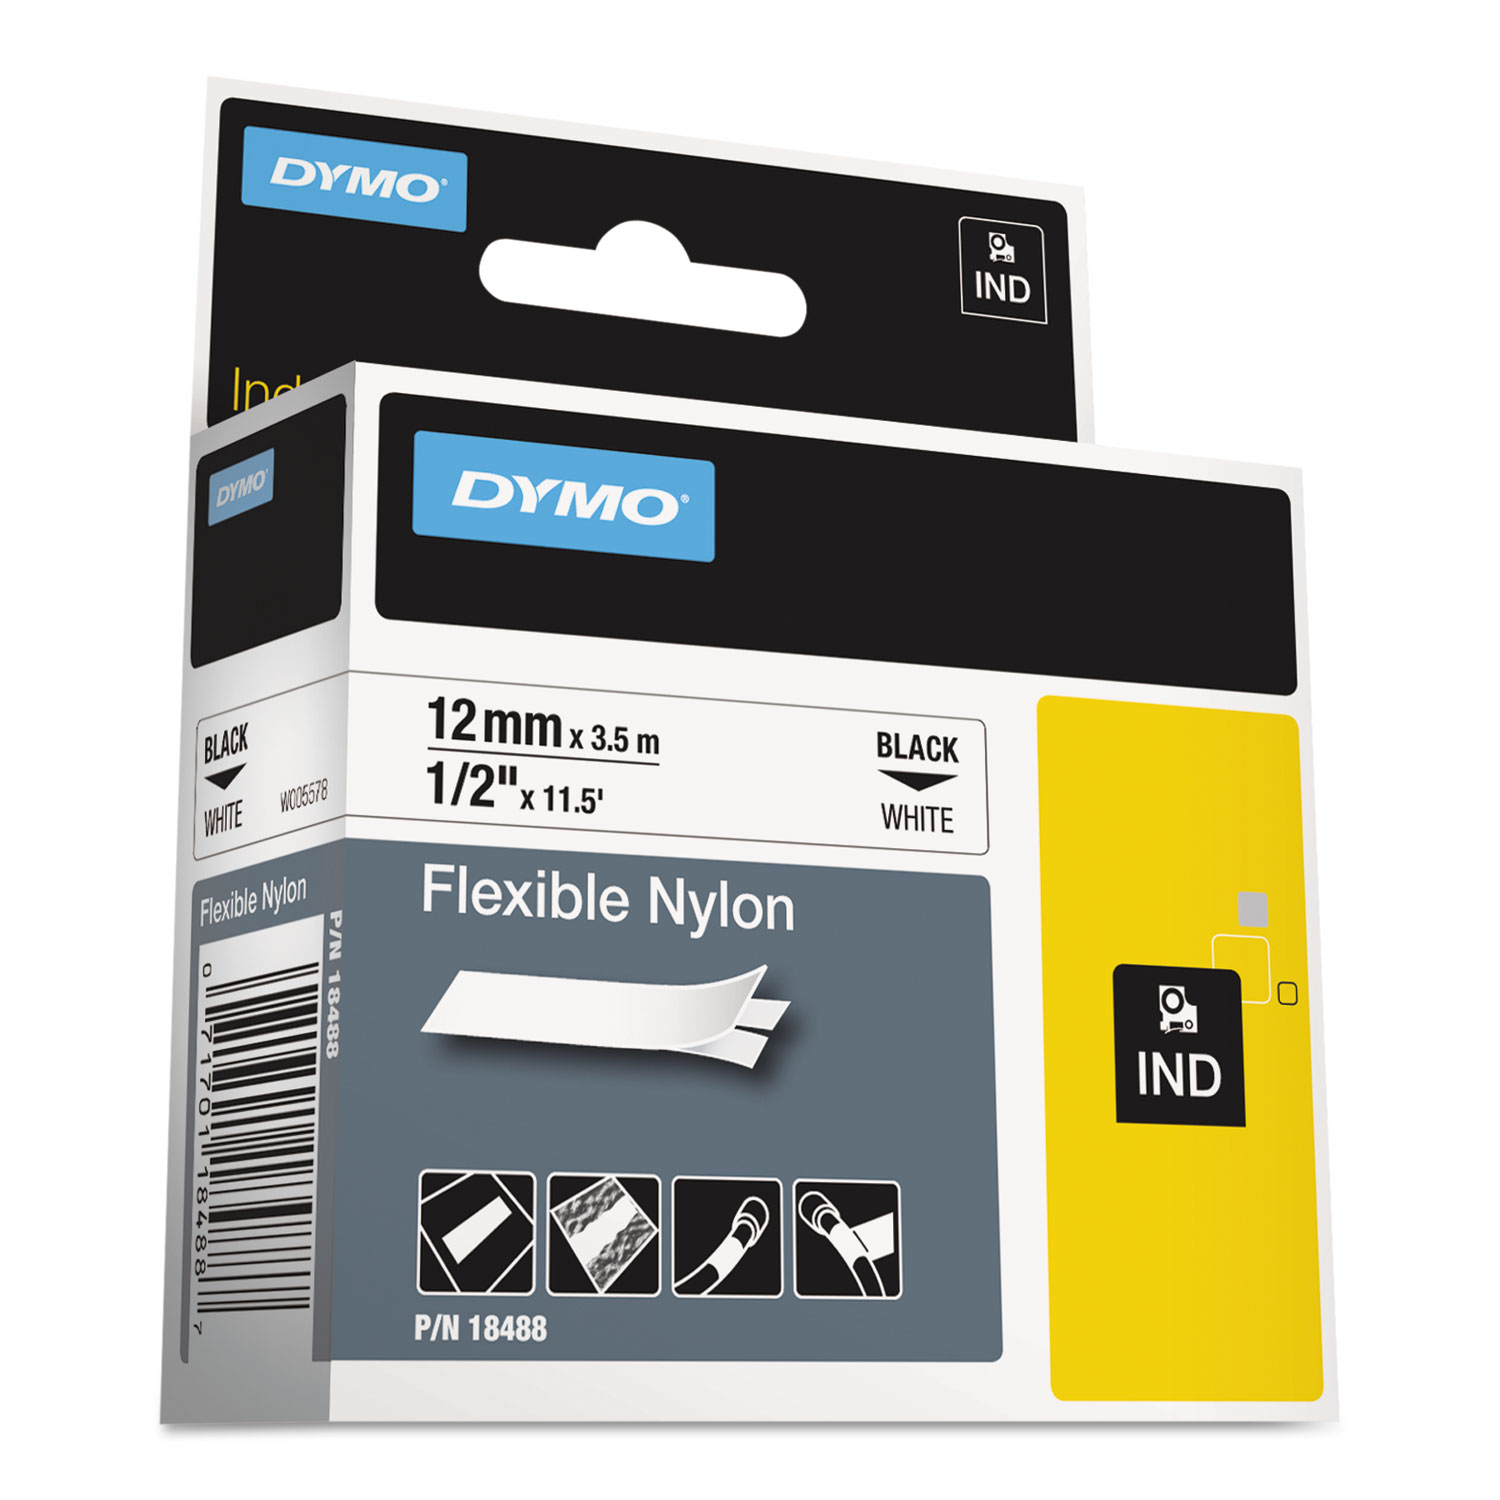 DYM1755749 Dymo RhinoPRO 5200 Label Maker by DYMO - 2